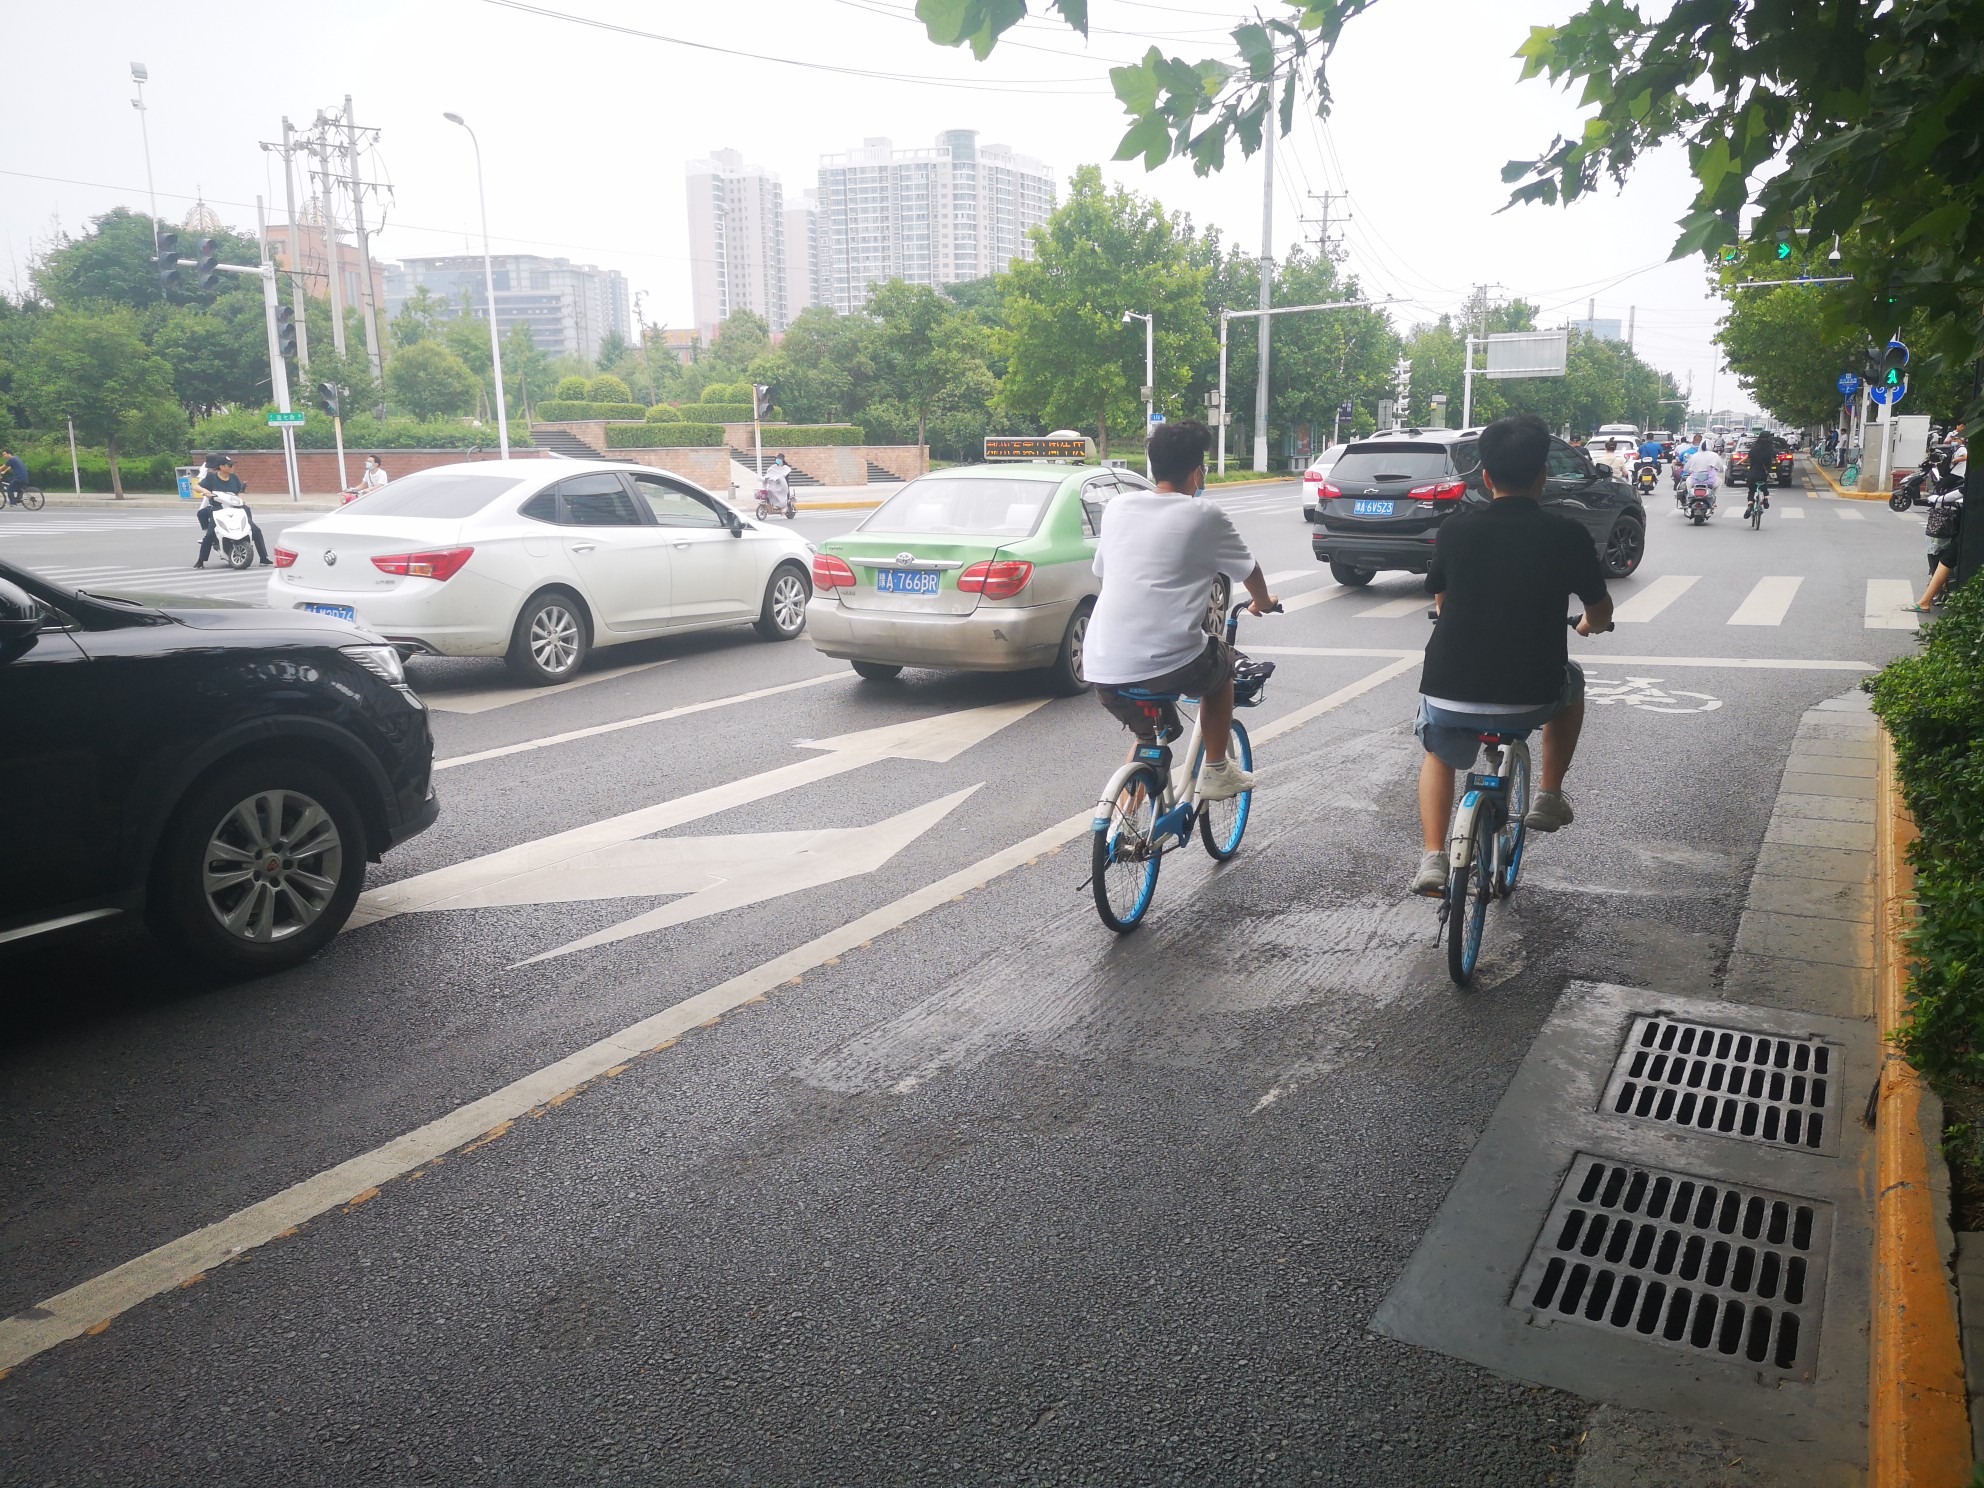 郑州花园路与东风路路口空中指示牌和地面标线不统一 过往司机有点蒙